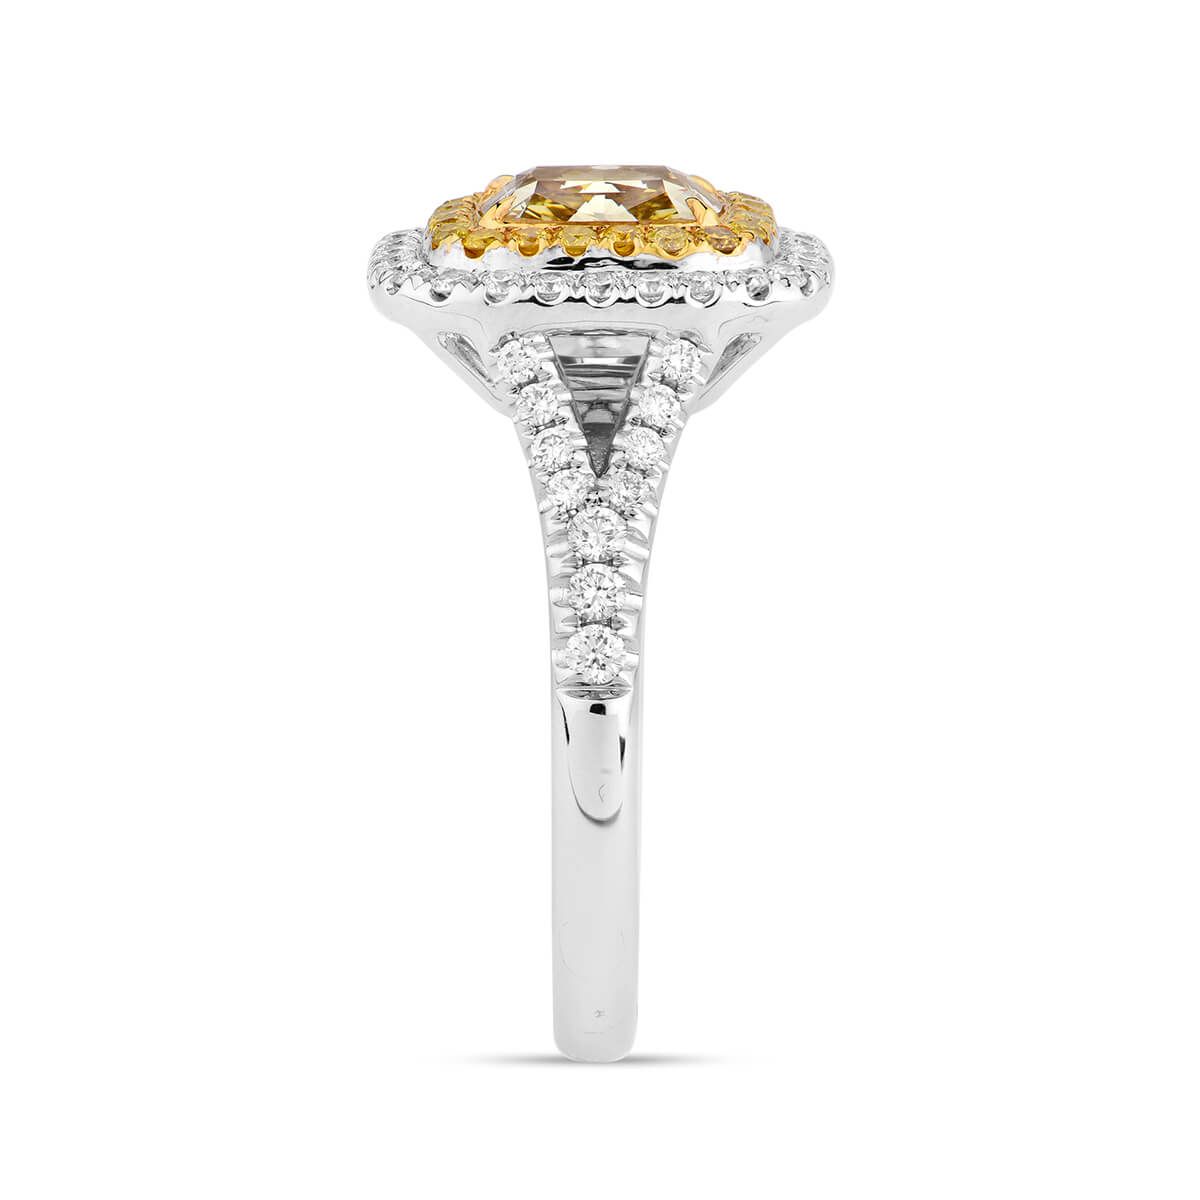 Fancy Yellow Diamond Ring, 1.99 Ct. TW, Cushion shape, GIA Certified, 2181653159